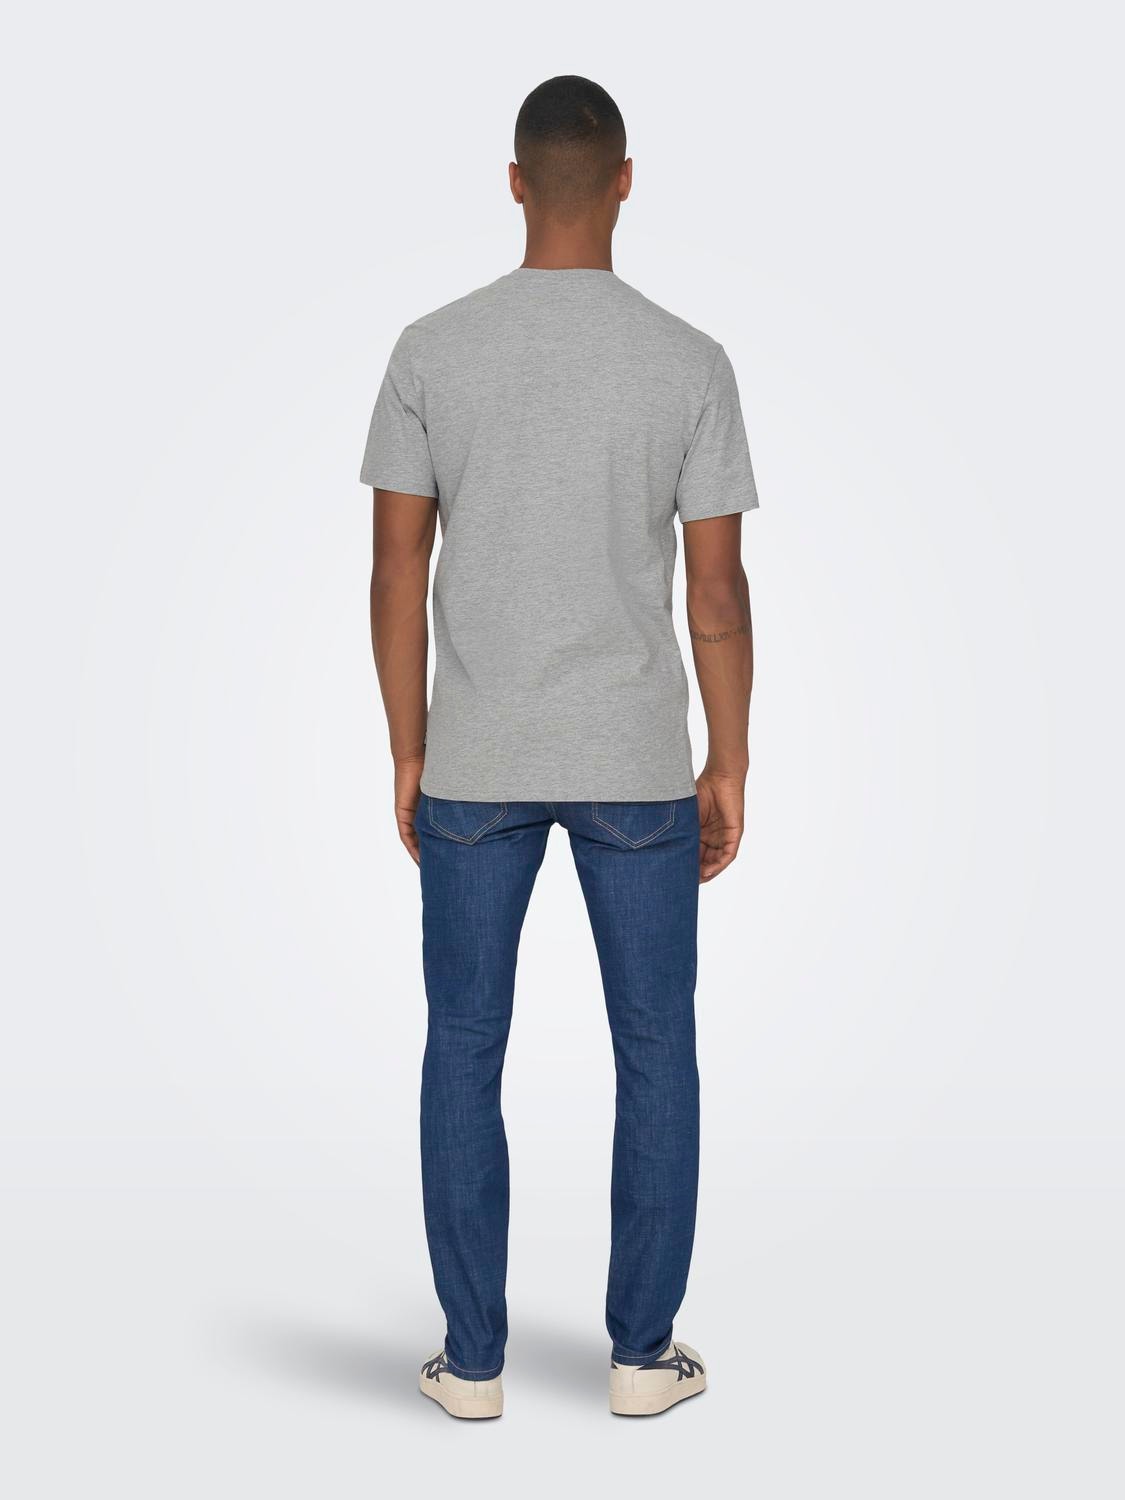 ONLY & SONS Regular Fit Round Neck T-Shirt -Light Grey Melange - 22026328